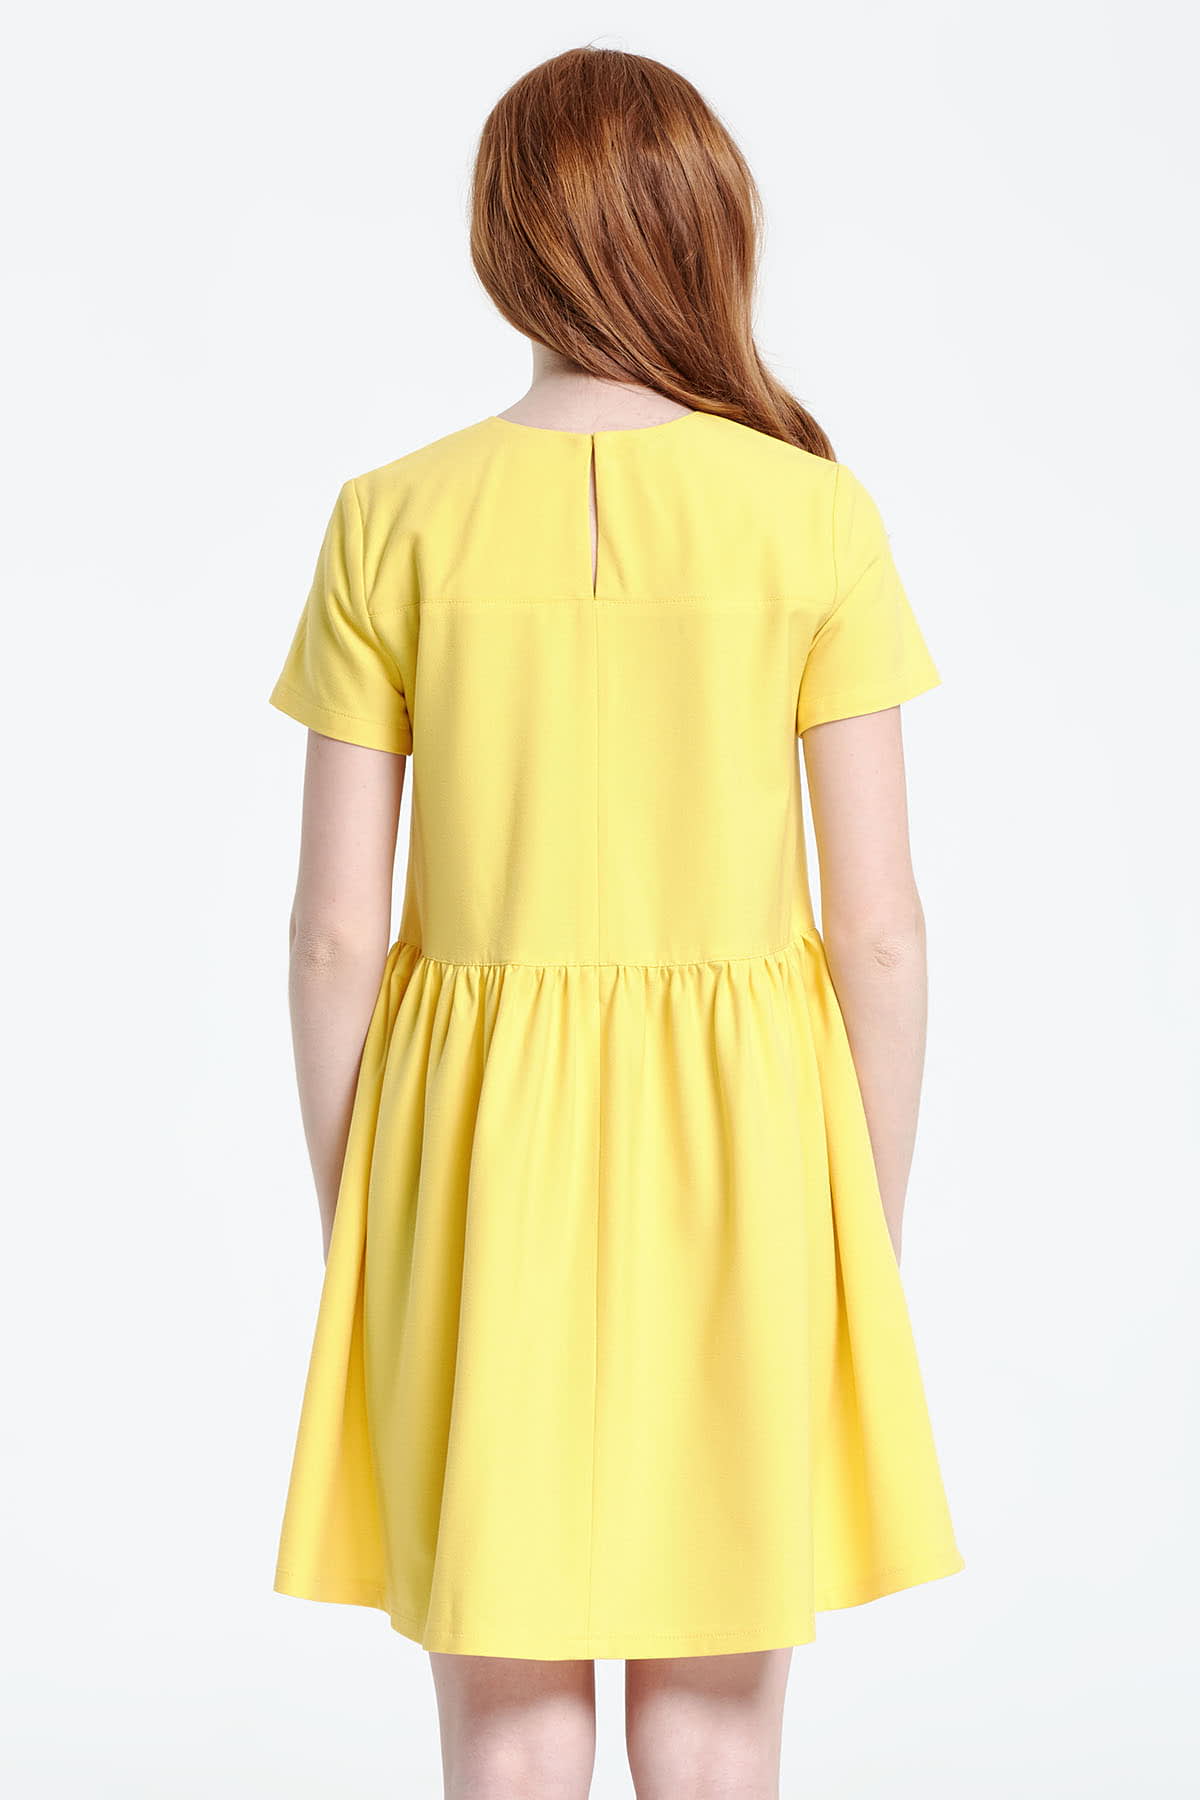 Swing yellow dress , photo 4